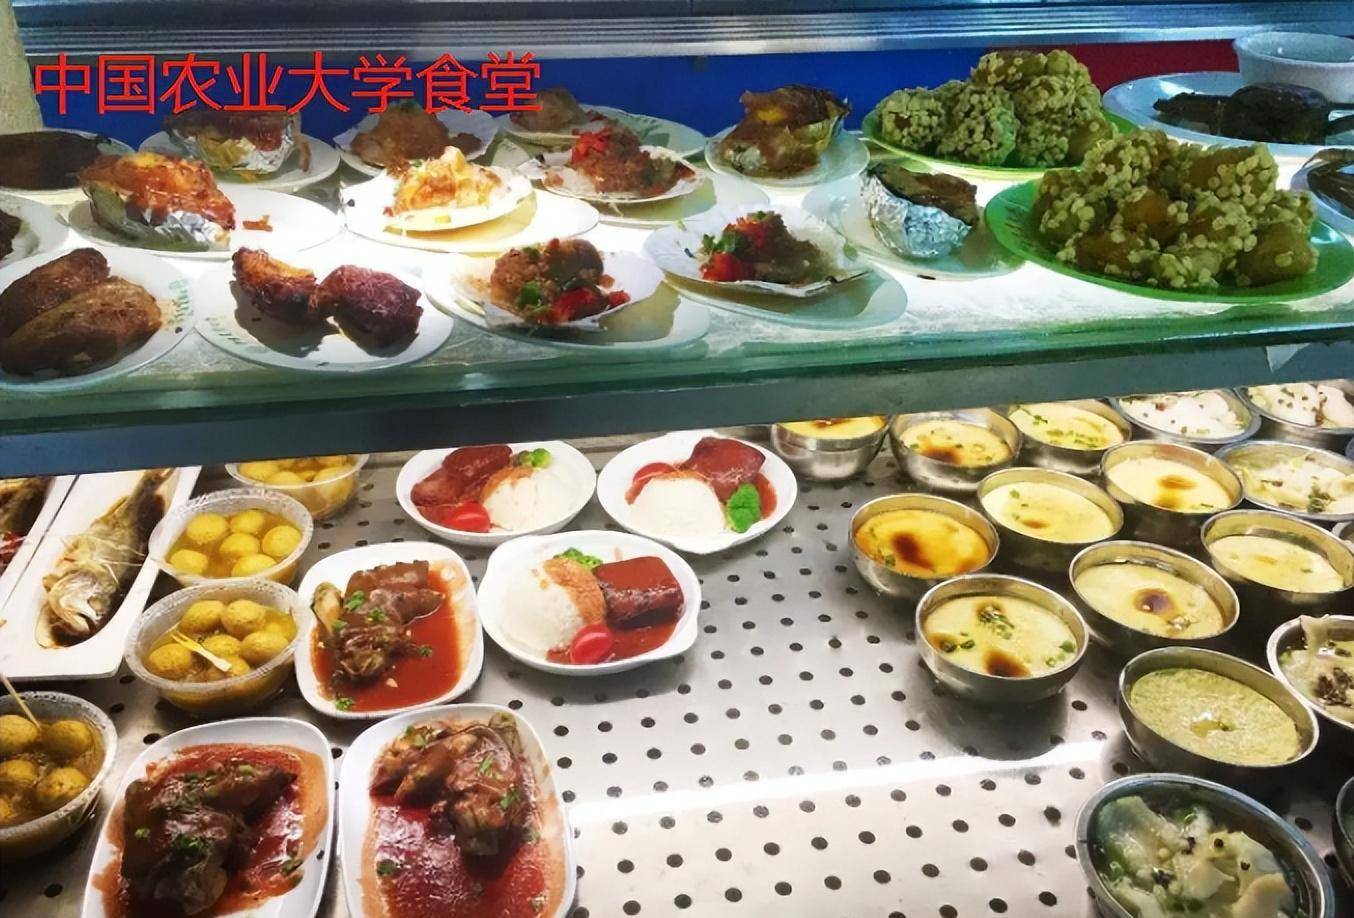 比如中国农业大学的食堂就深受学生欢迎,让其